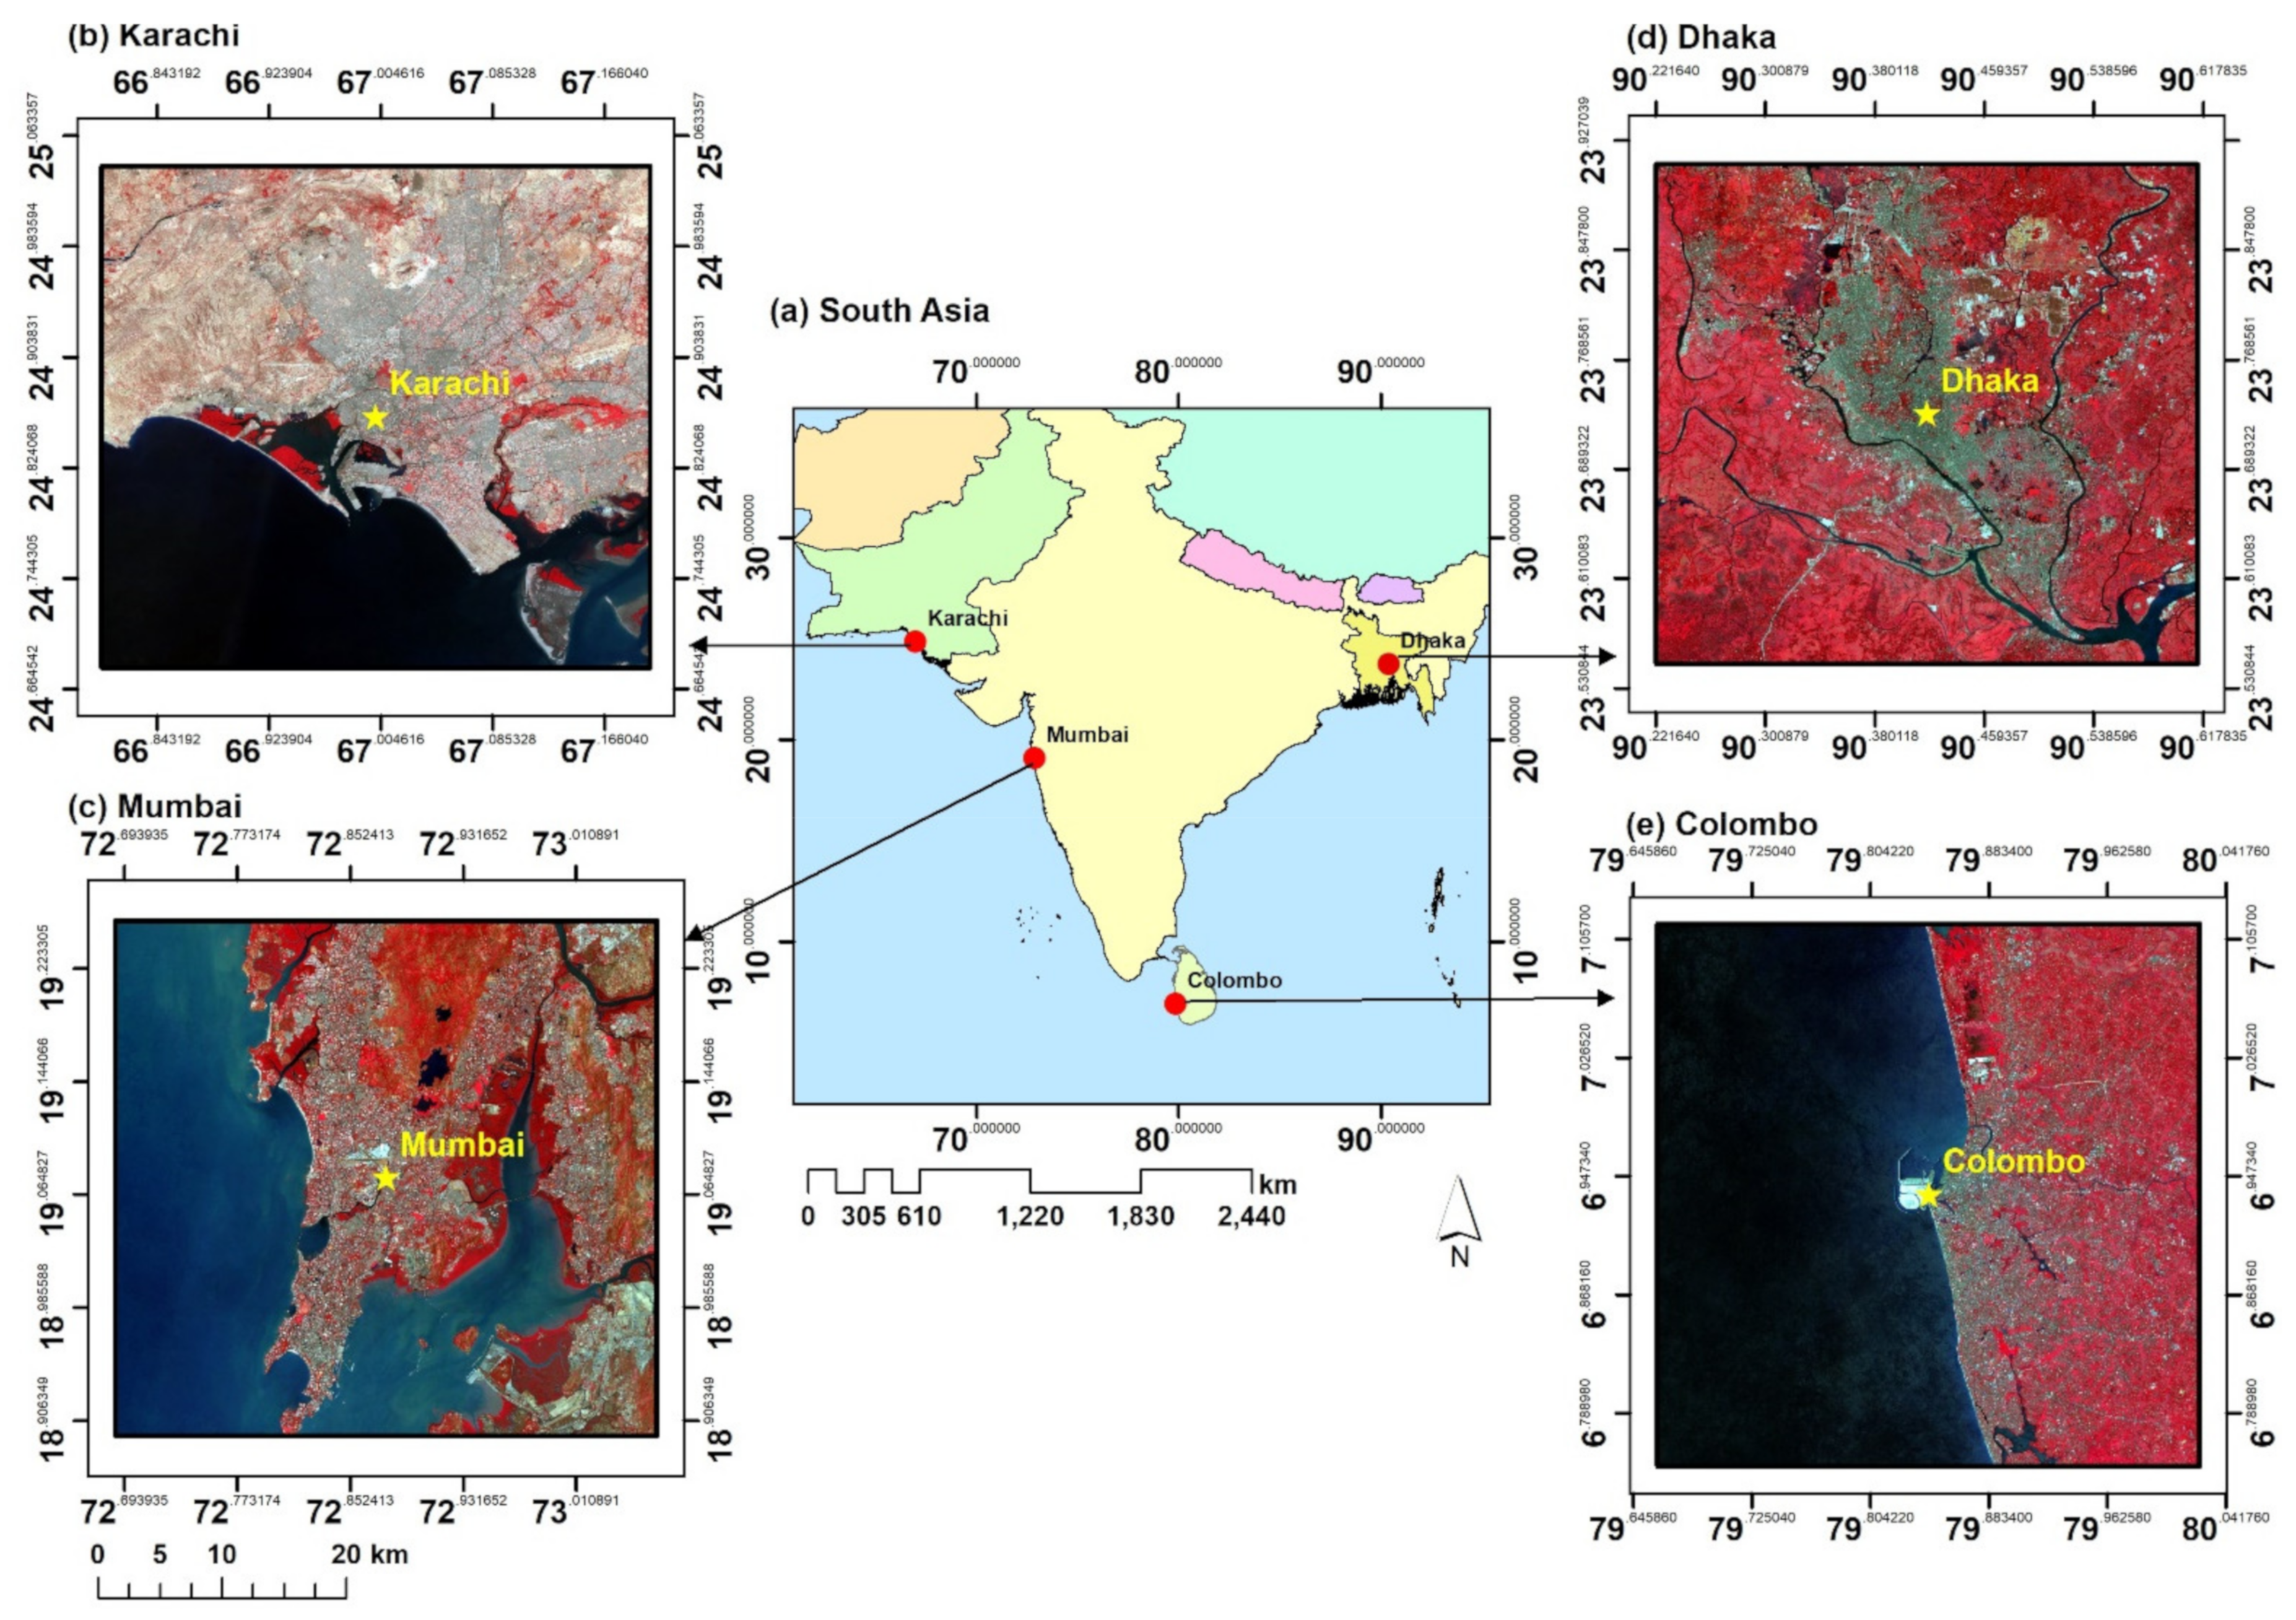 Case studies on urban density from Karachi, Bangkok and Kathmandu